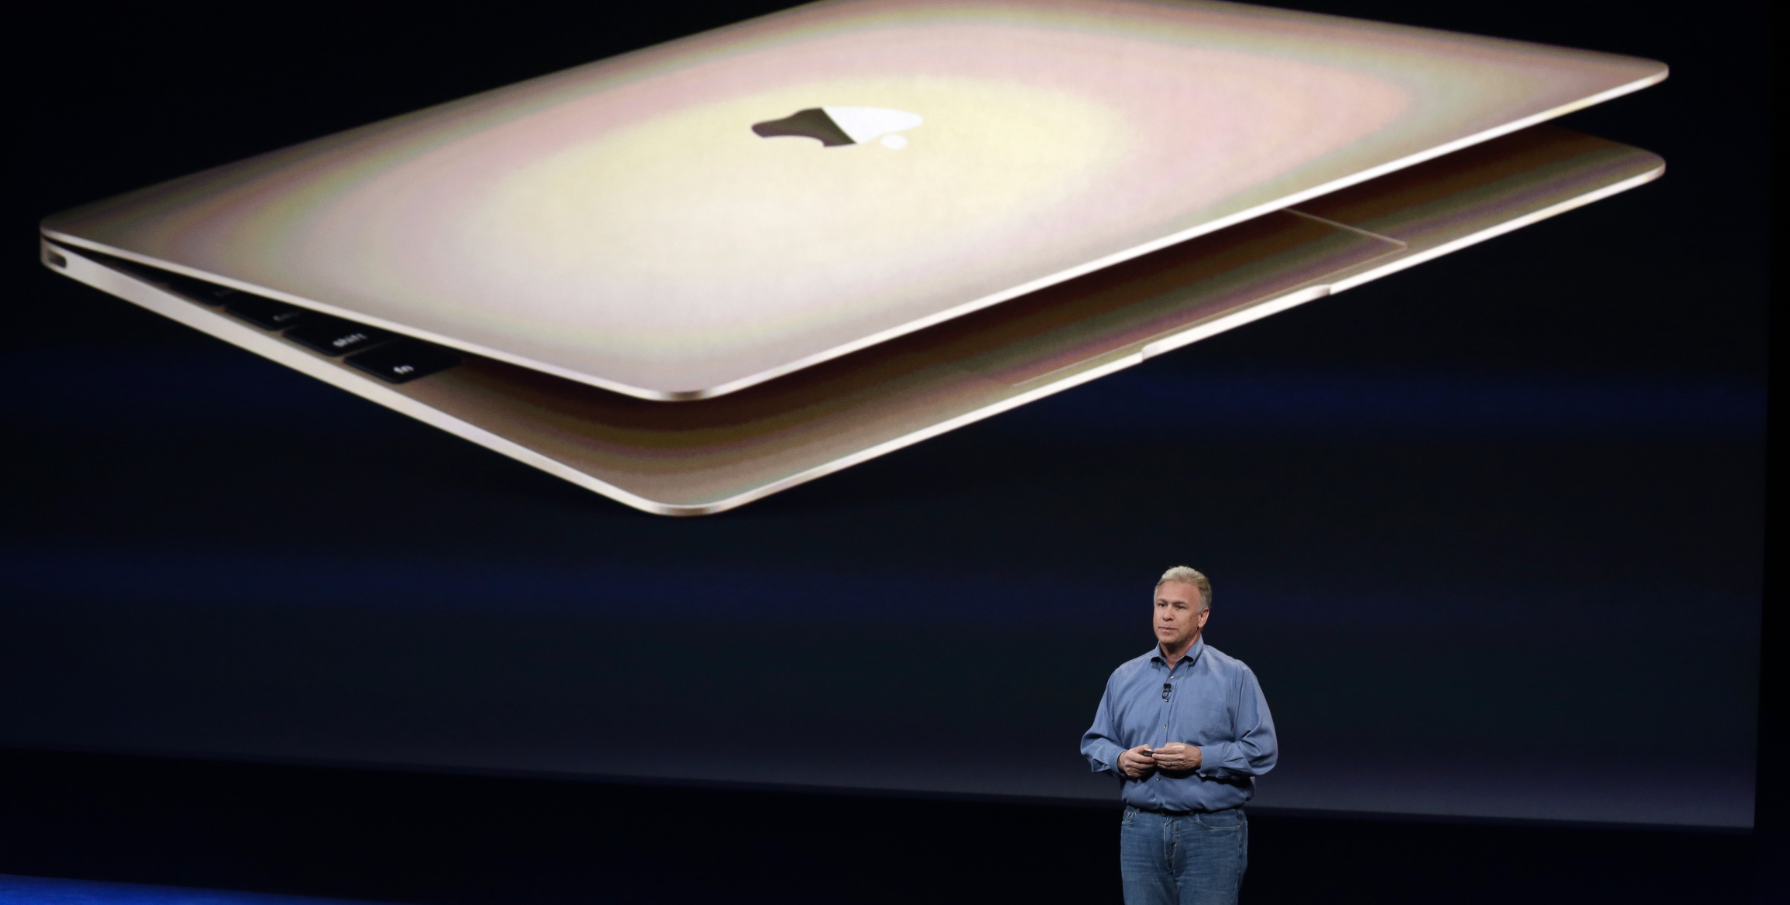 apple new macbook pro 2016 release date